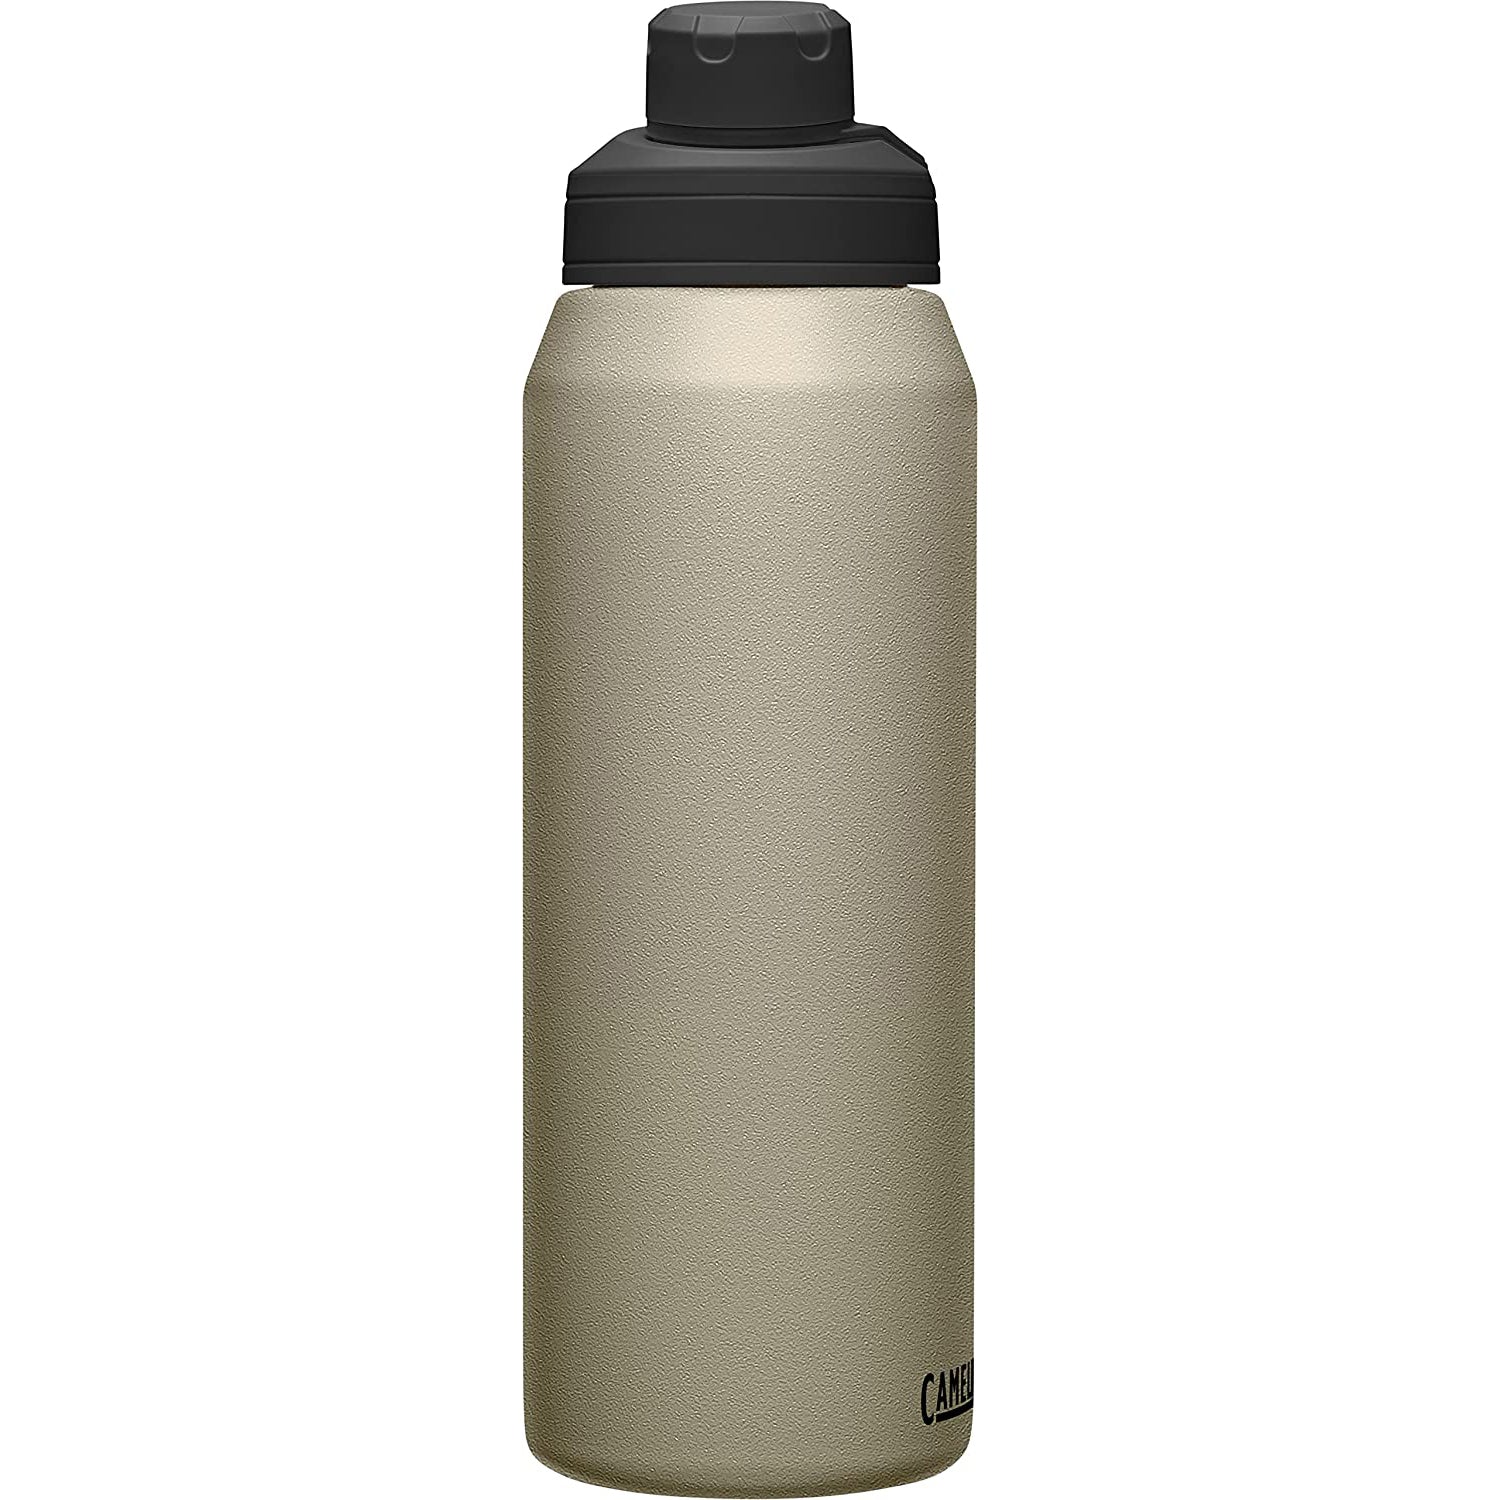 Camelbak Chute Mag Vacuum Stainless Steel Bottle, Dune - 32OZ/1000 ML - Best Price online Prokicksports.com